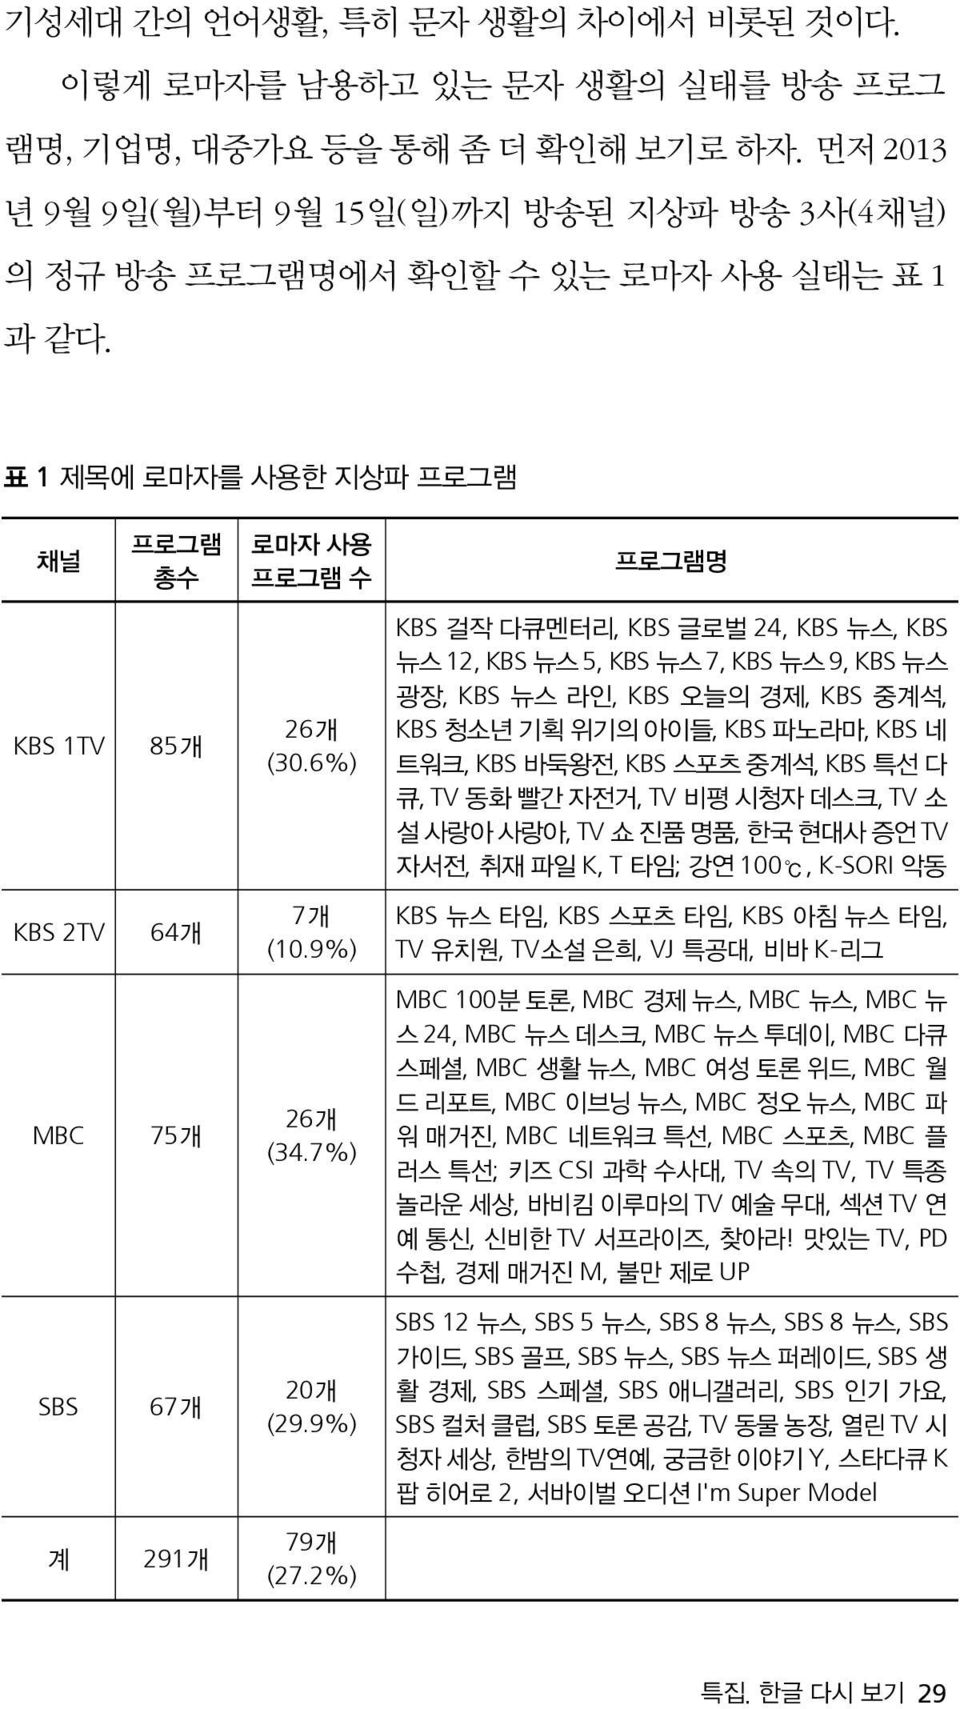 표 1 제목에 로마자를 사용한 지상파 프로그램 채널 KBS 1TV KBS 2TV MBC SBS 계 프로그램 총수 85개 64개 75개 67개 291개 로마자 사용 프로그램 수 26개 (30.6%) 7개 (10.9%) 26개 (34.7%) 20개 (29.9%) 79개 (27.